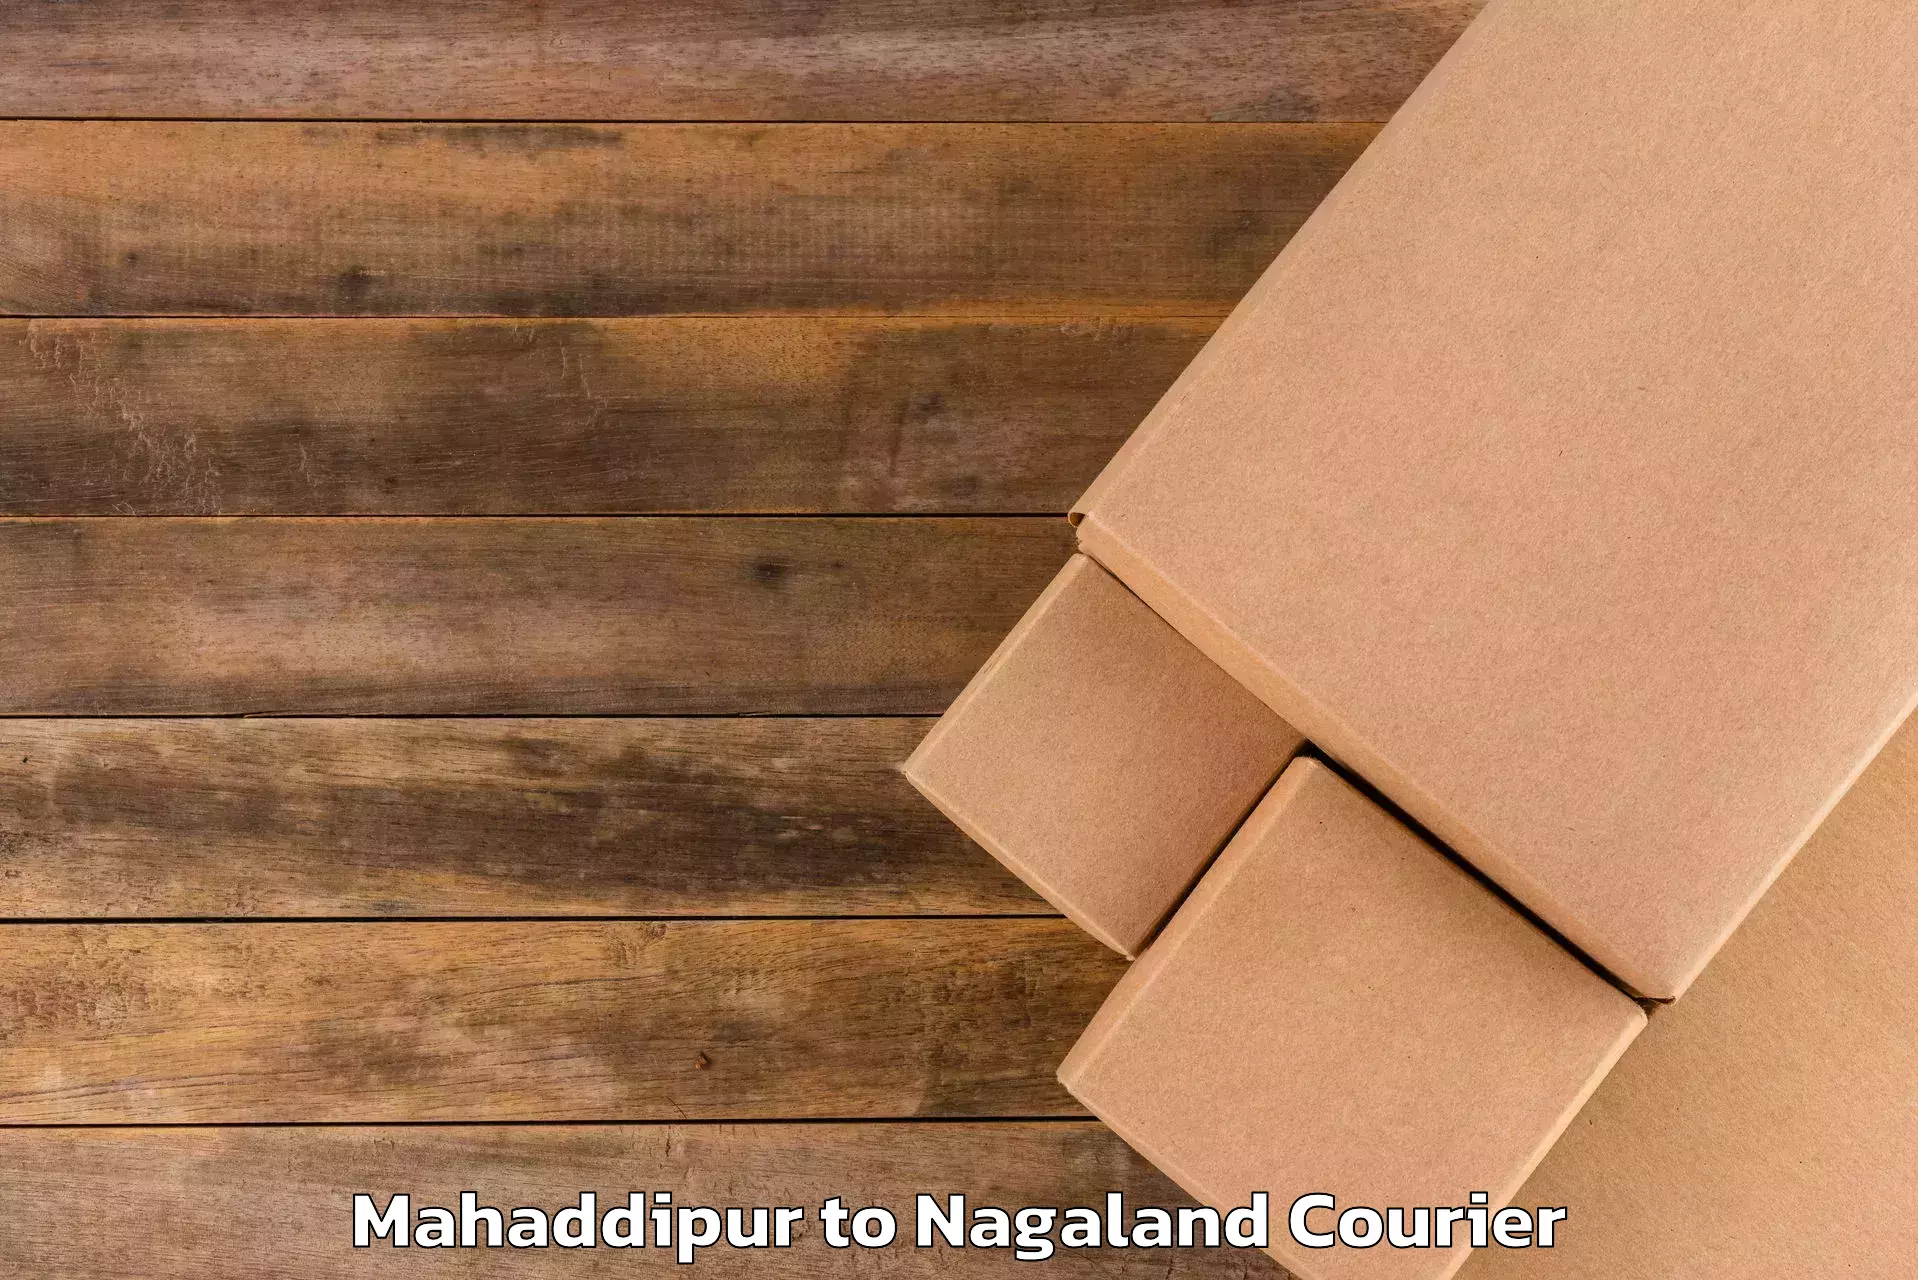 Baggage shipping logistics Mahaddipur to Nagaland